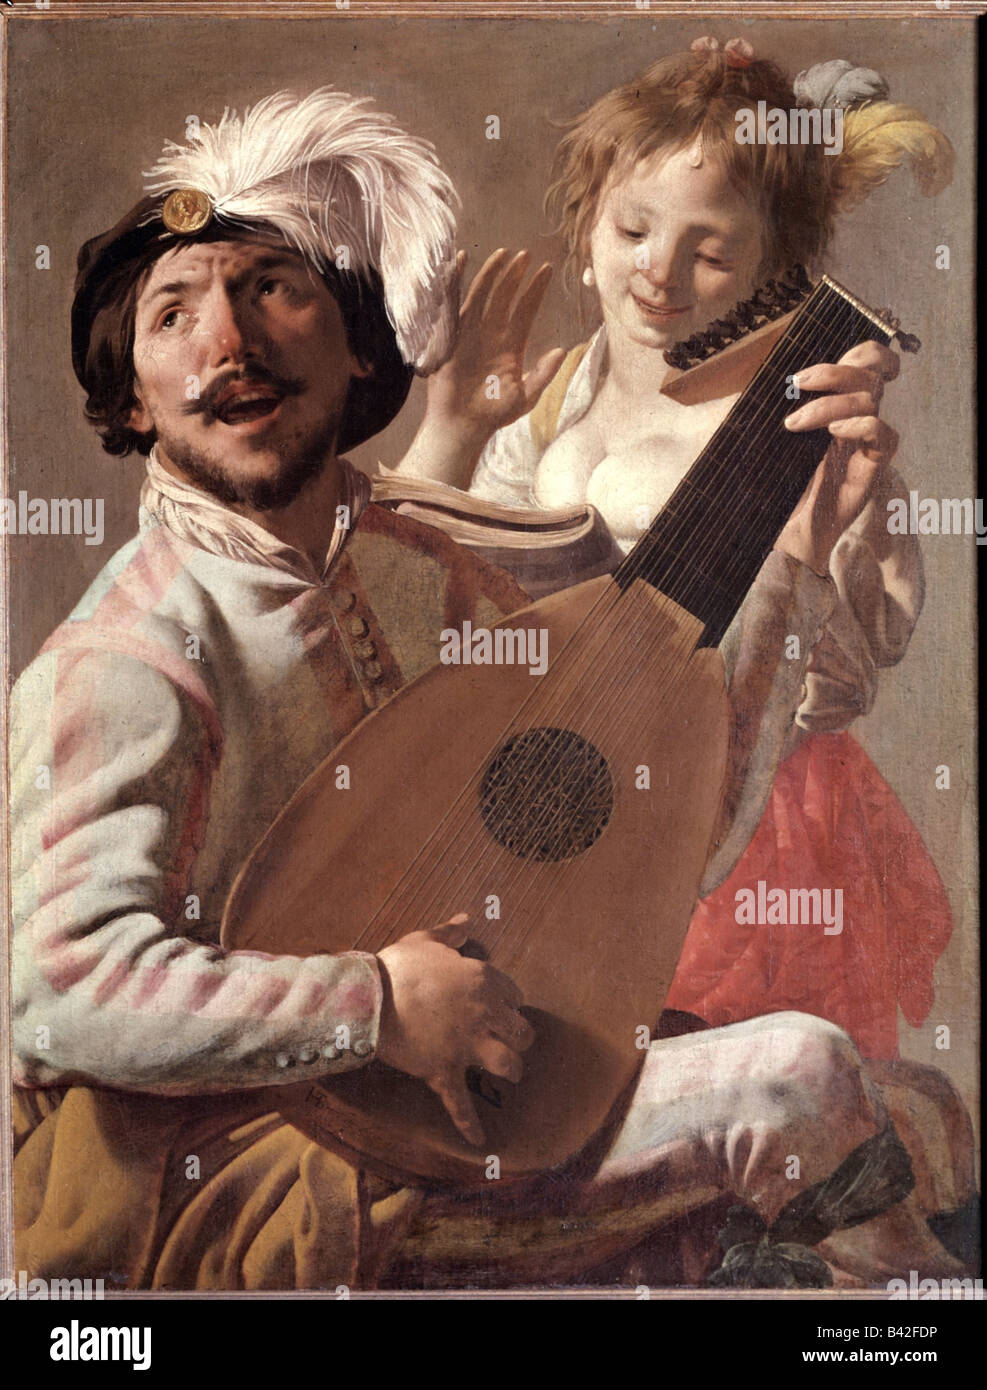 Belle arti, Terbrugghen, Hendrick, (1588 - 1629), pittura, 'Il Duetto", 1628, olio su tela, Louvre, Parigi, musica, musicista, m Foto Stock